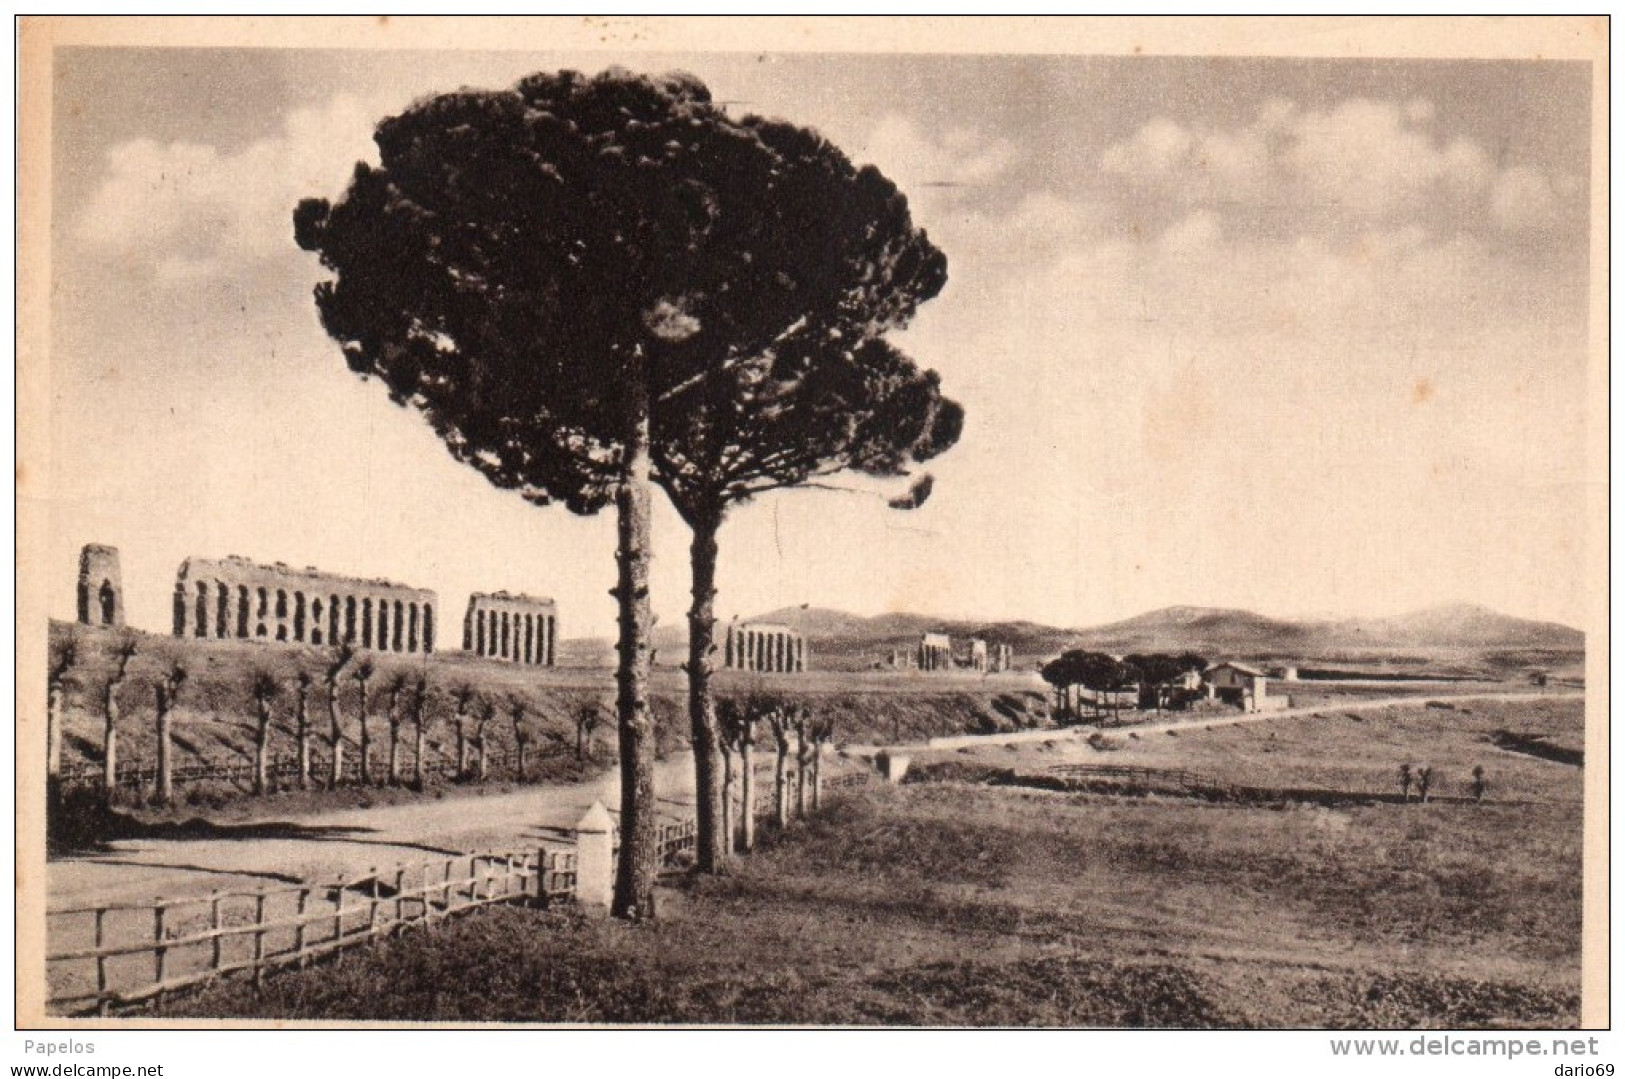 1935  CARTOLINA  CON ANNULLO ROMA - Andere Monumente & Gebäude